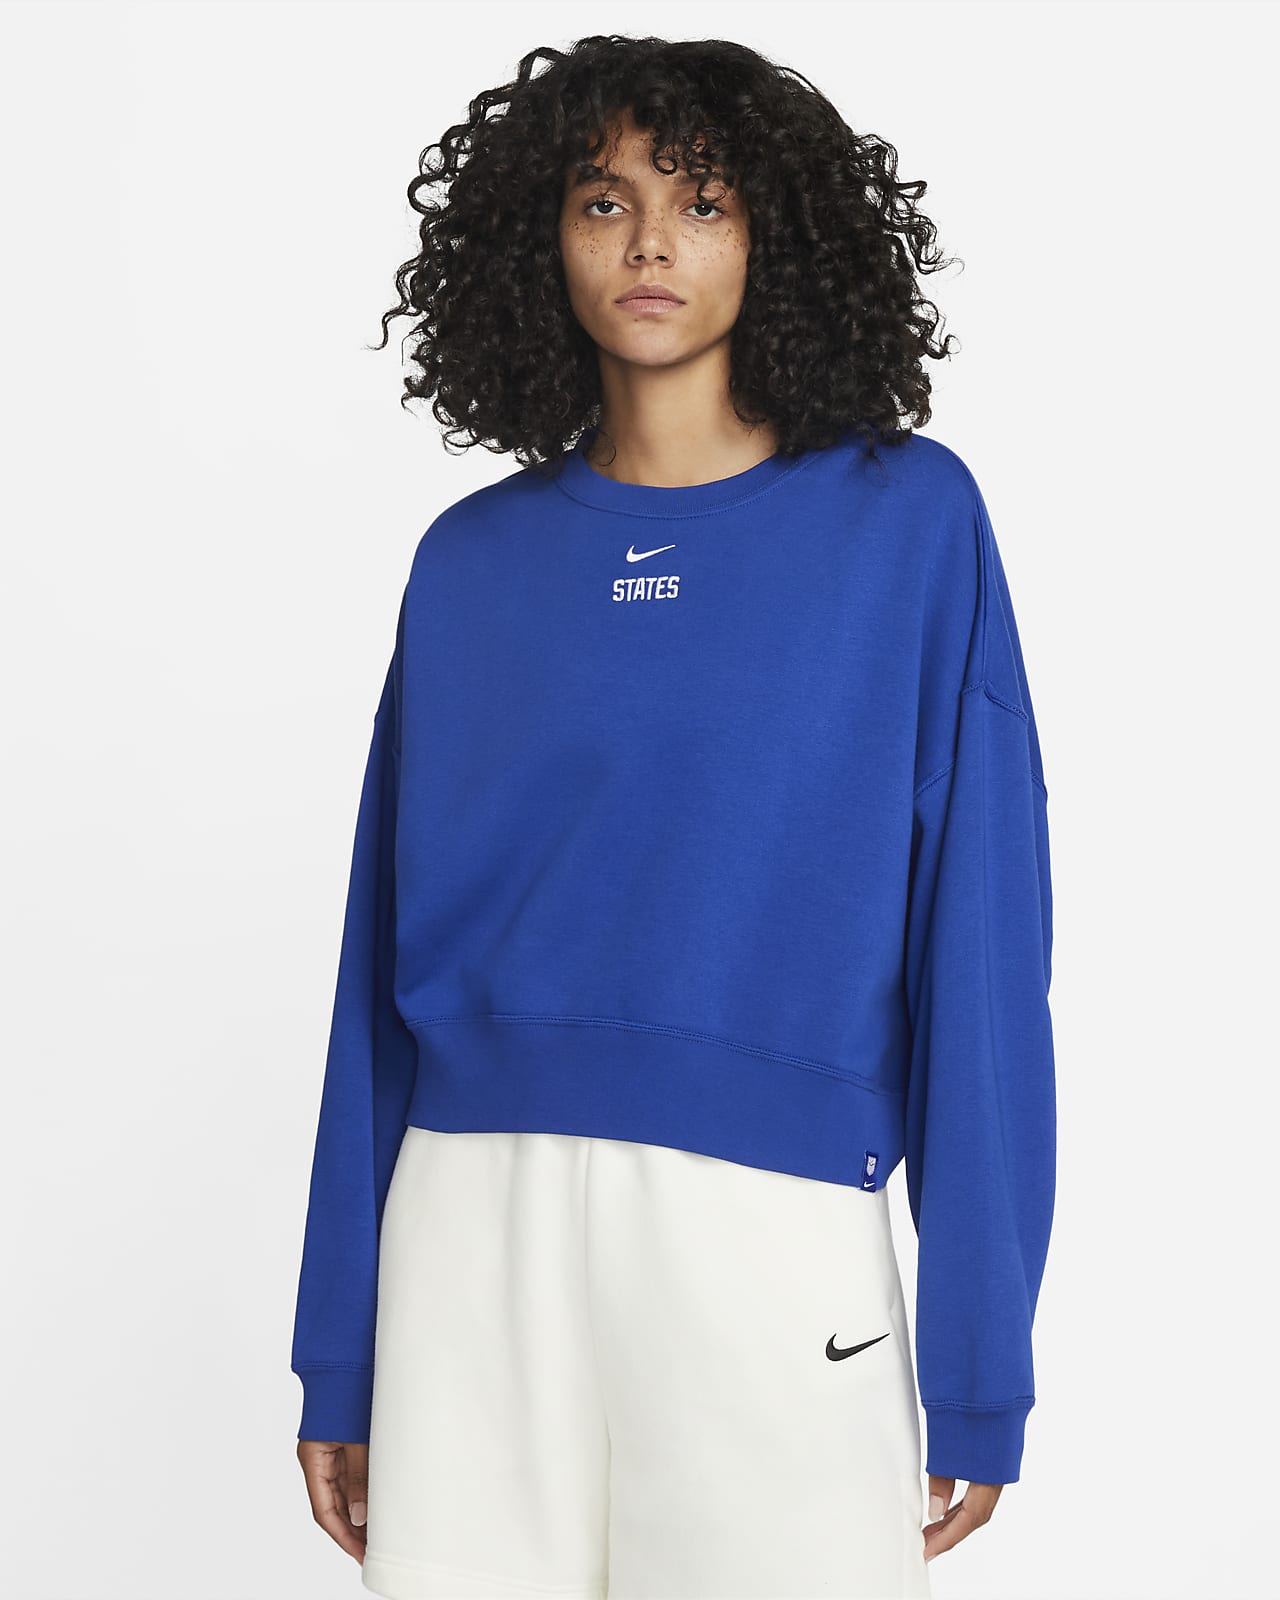 U.S. Fleece Sweatshirt. Nike.com